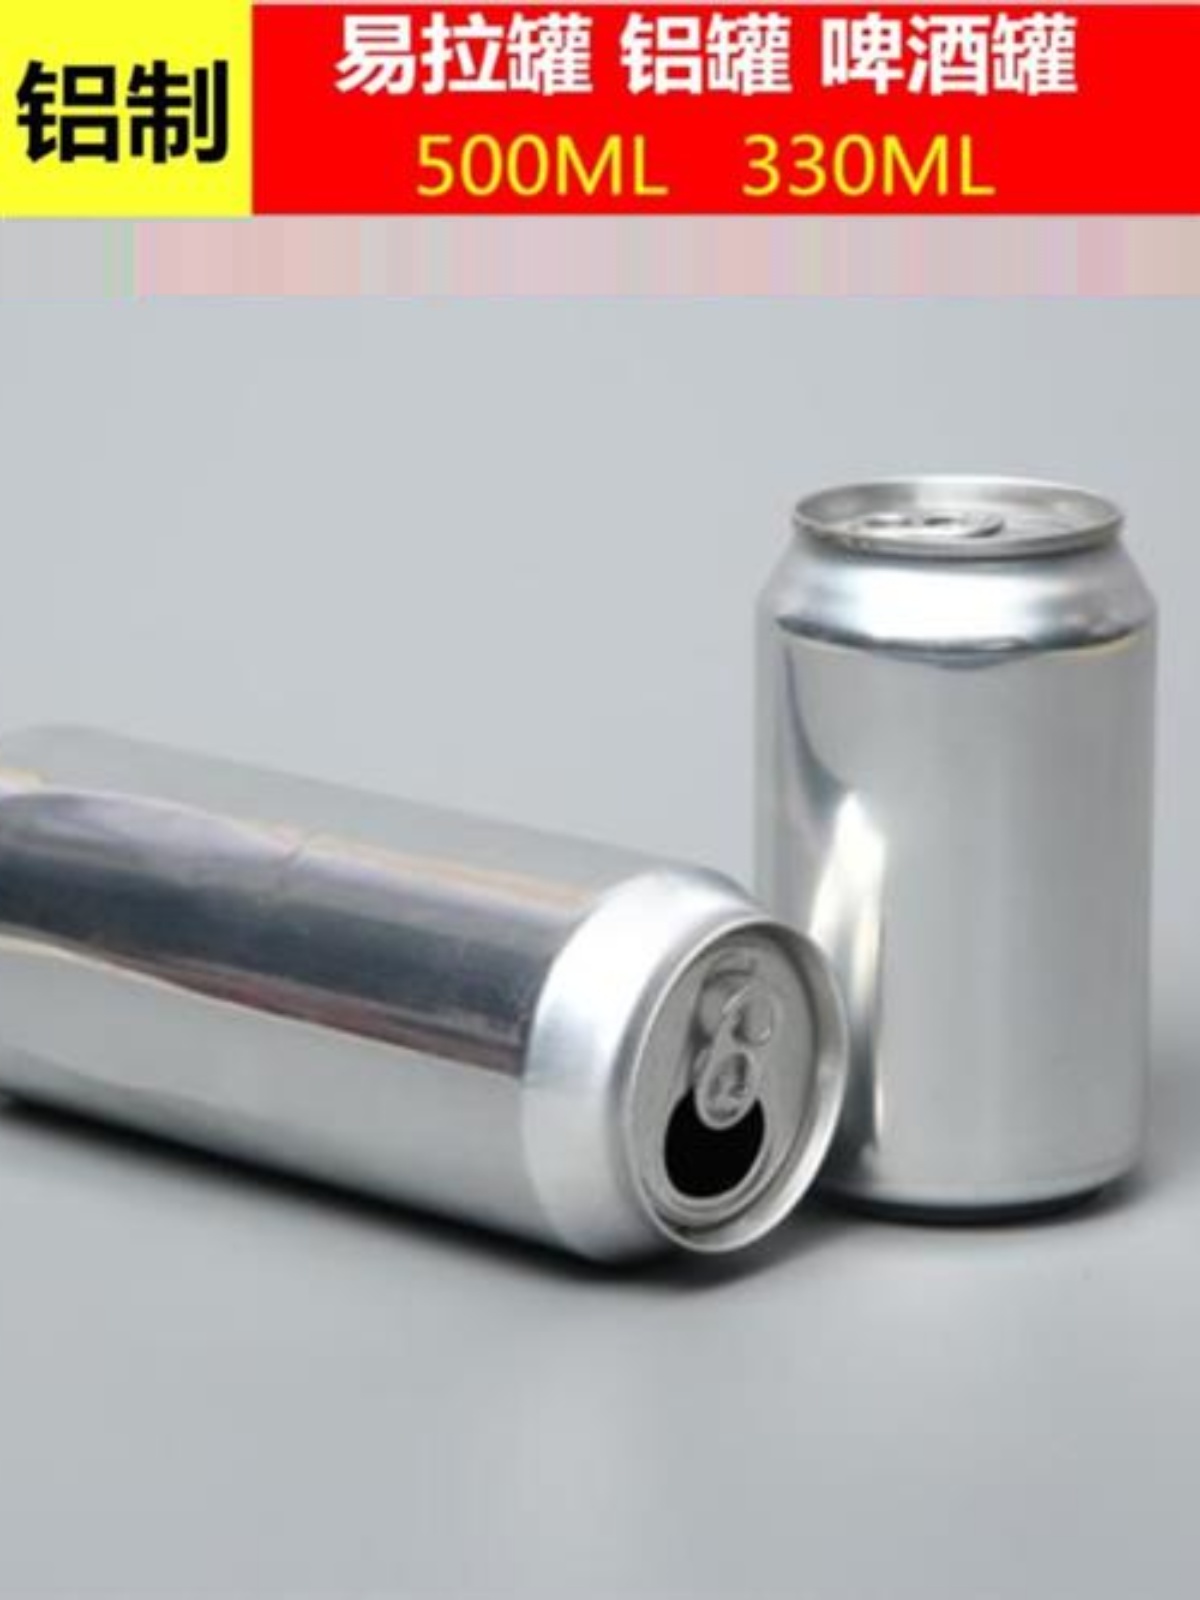 销铝罐散装啤酒瓶500ML包装瓶铝制易拉罐饮料瓶果酒罐330毫升密厂 - 图1